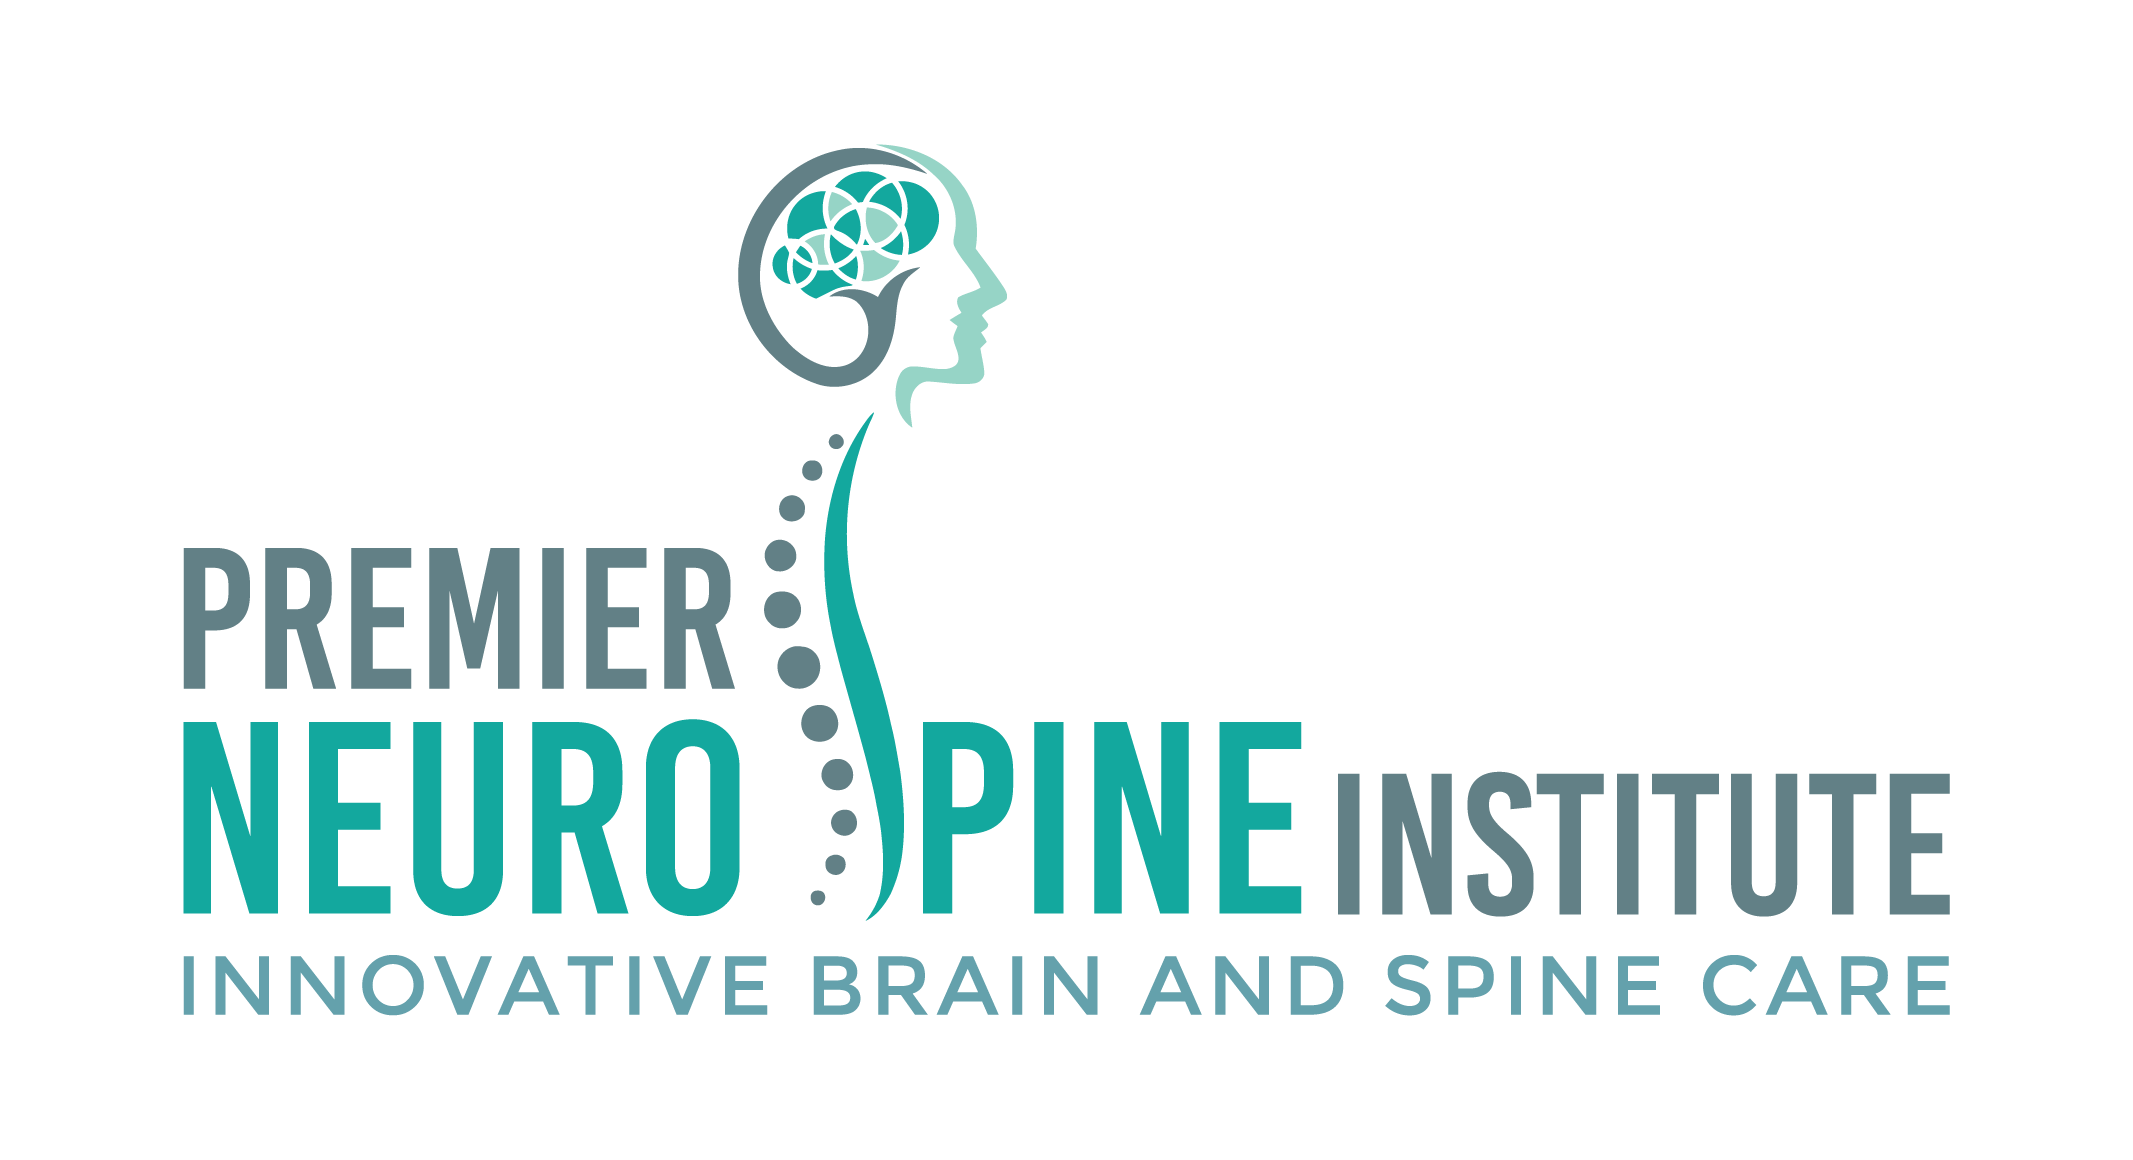 Premier NeuroSpine Institute